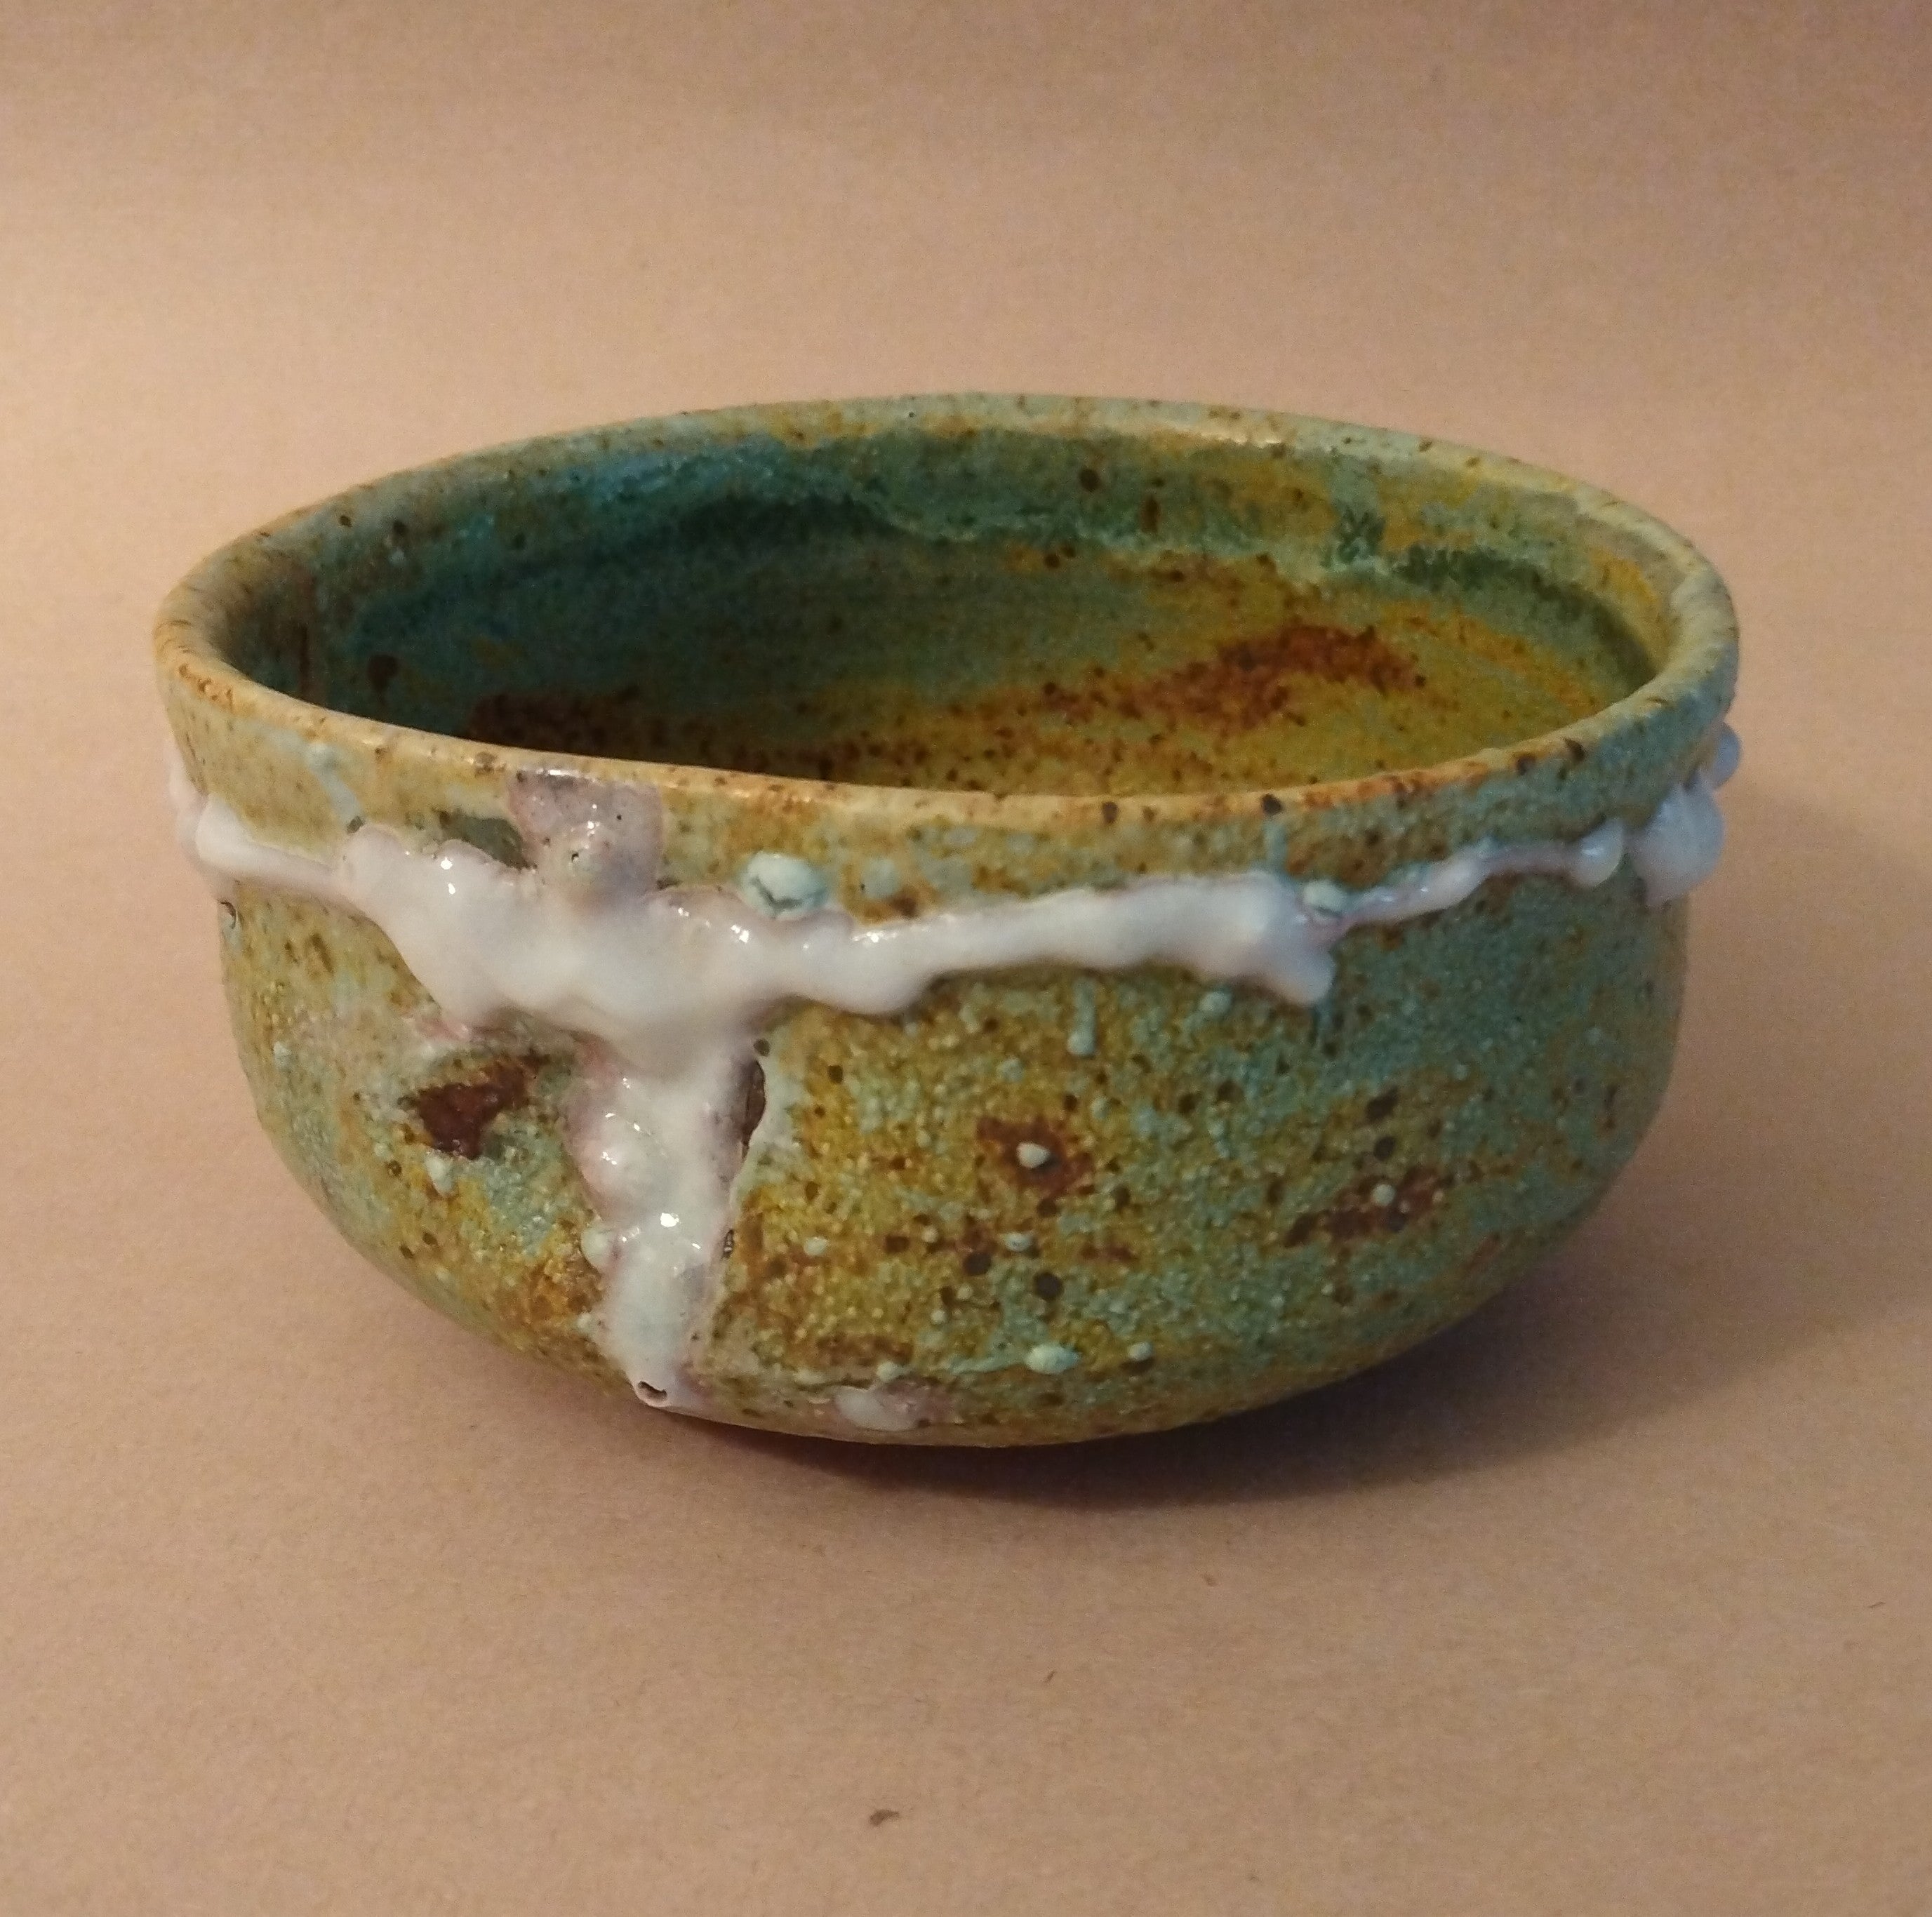 Badarai (Horse-washing basin shape) Matcha Chawan, Tea Bowl, by Sachiko Furuya